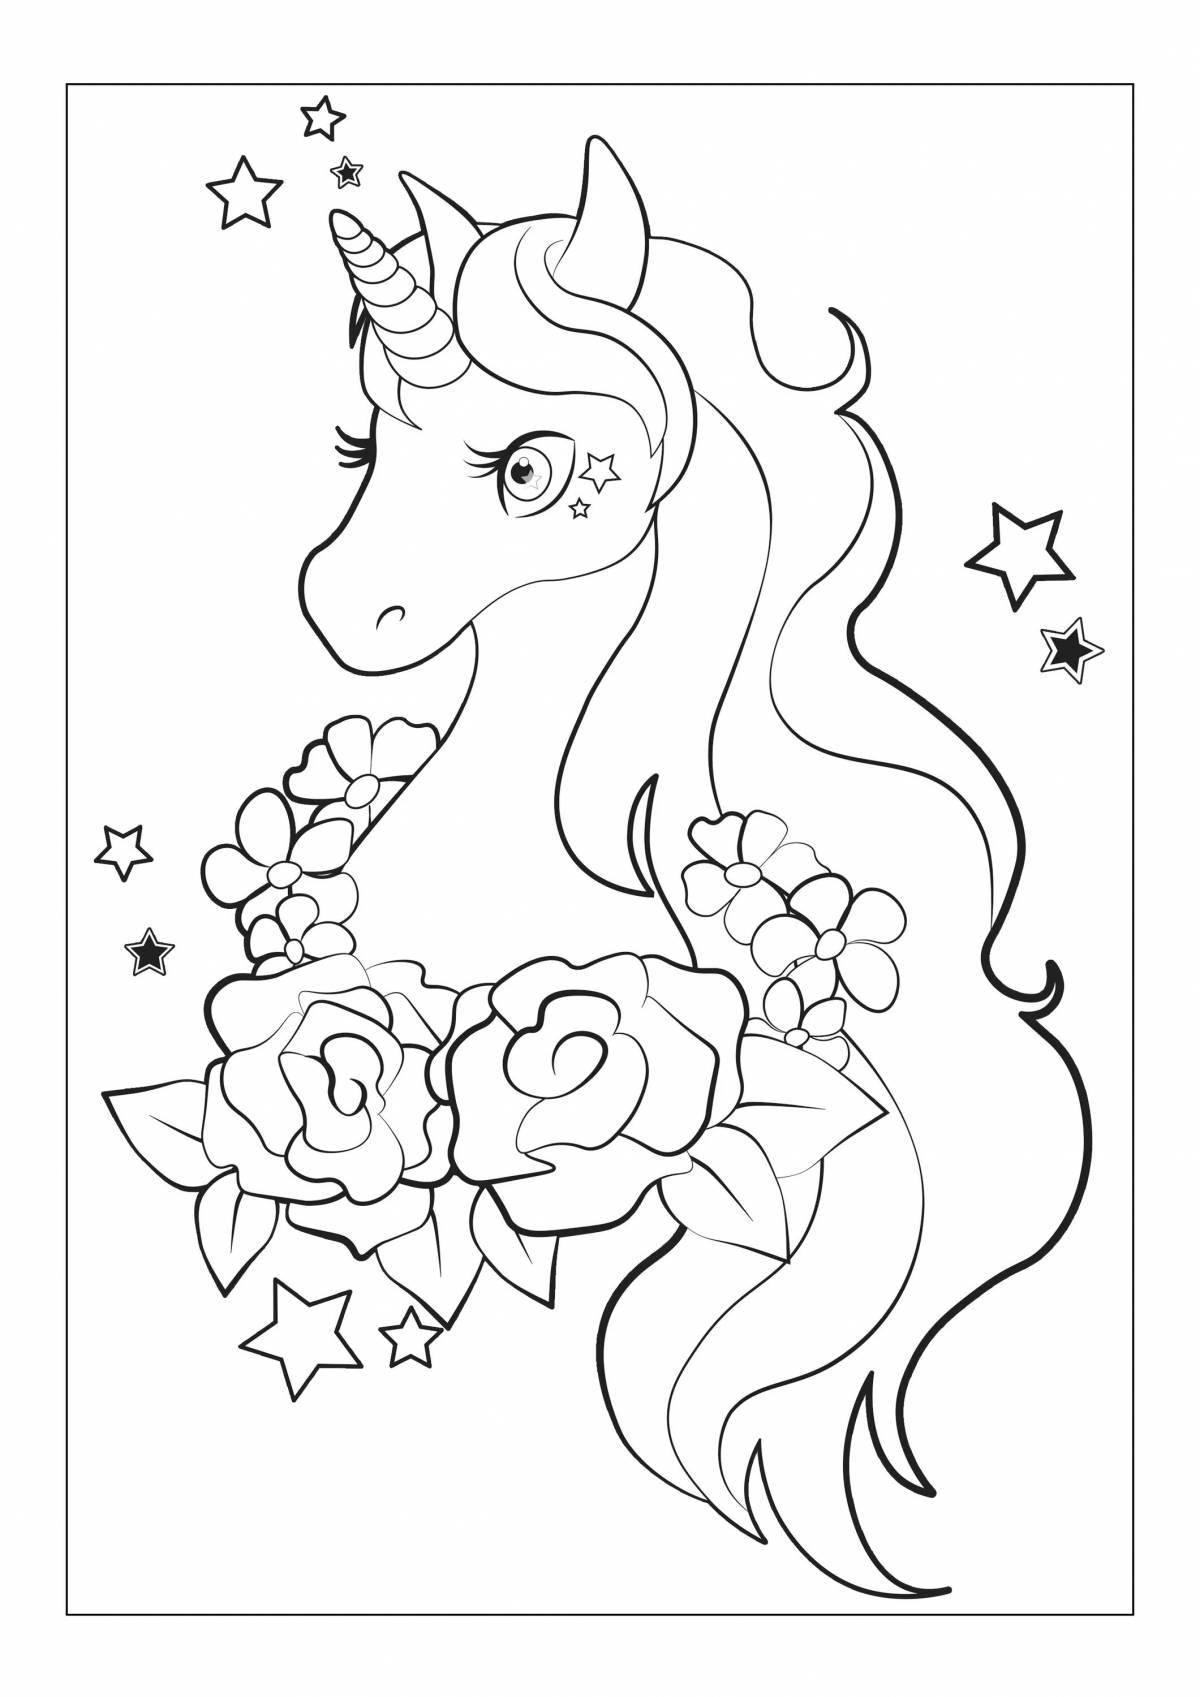 Exquisite magic unicorns coloring book